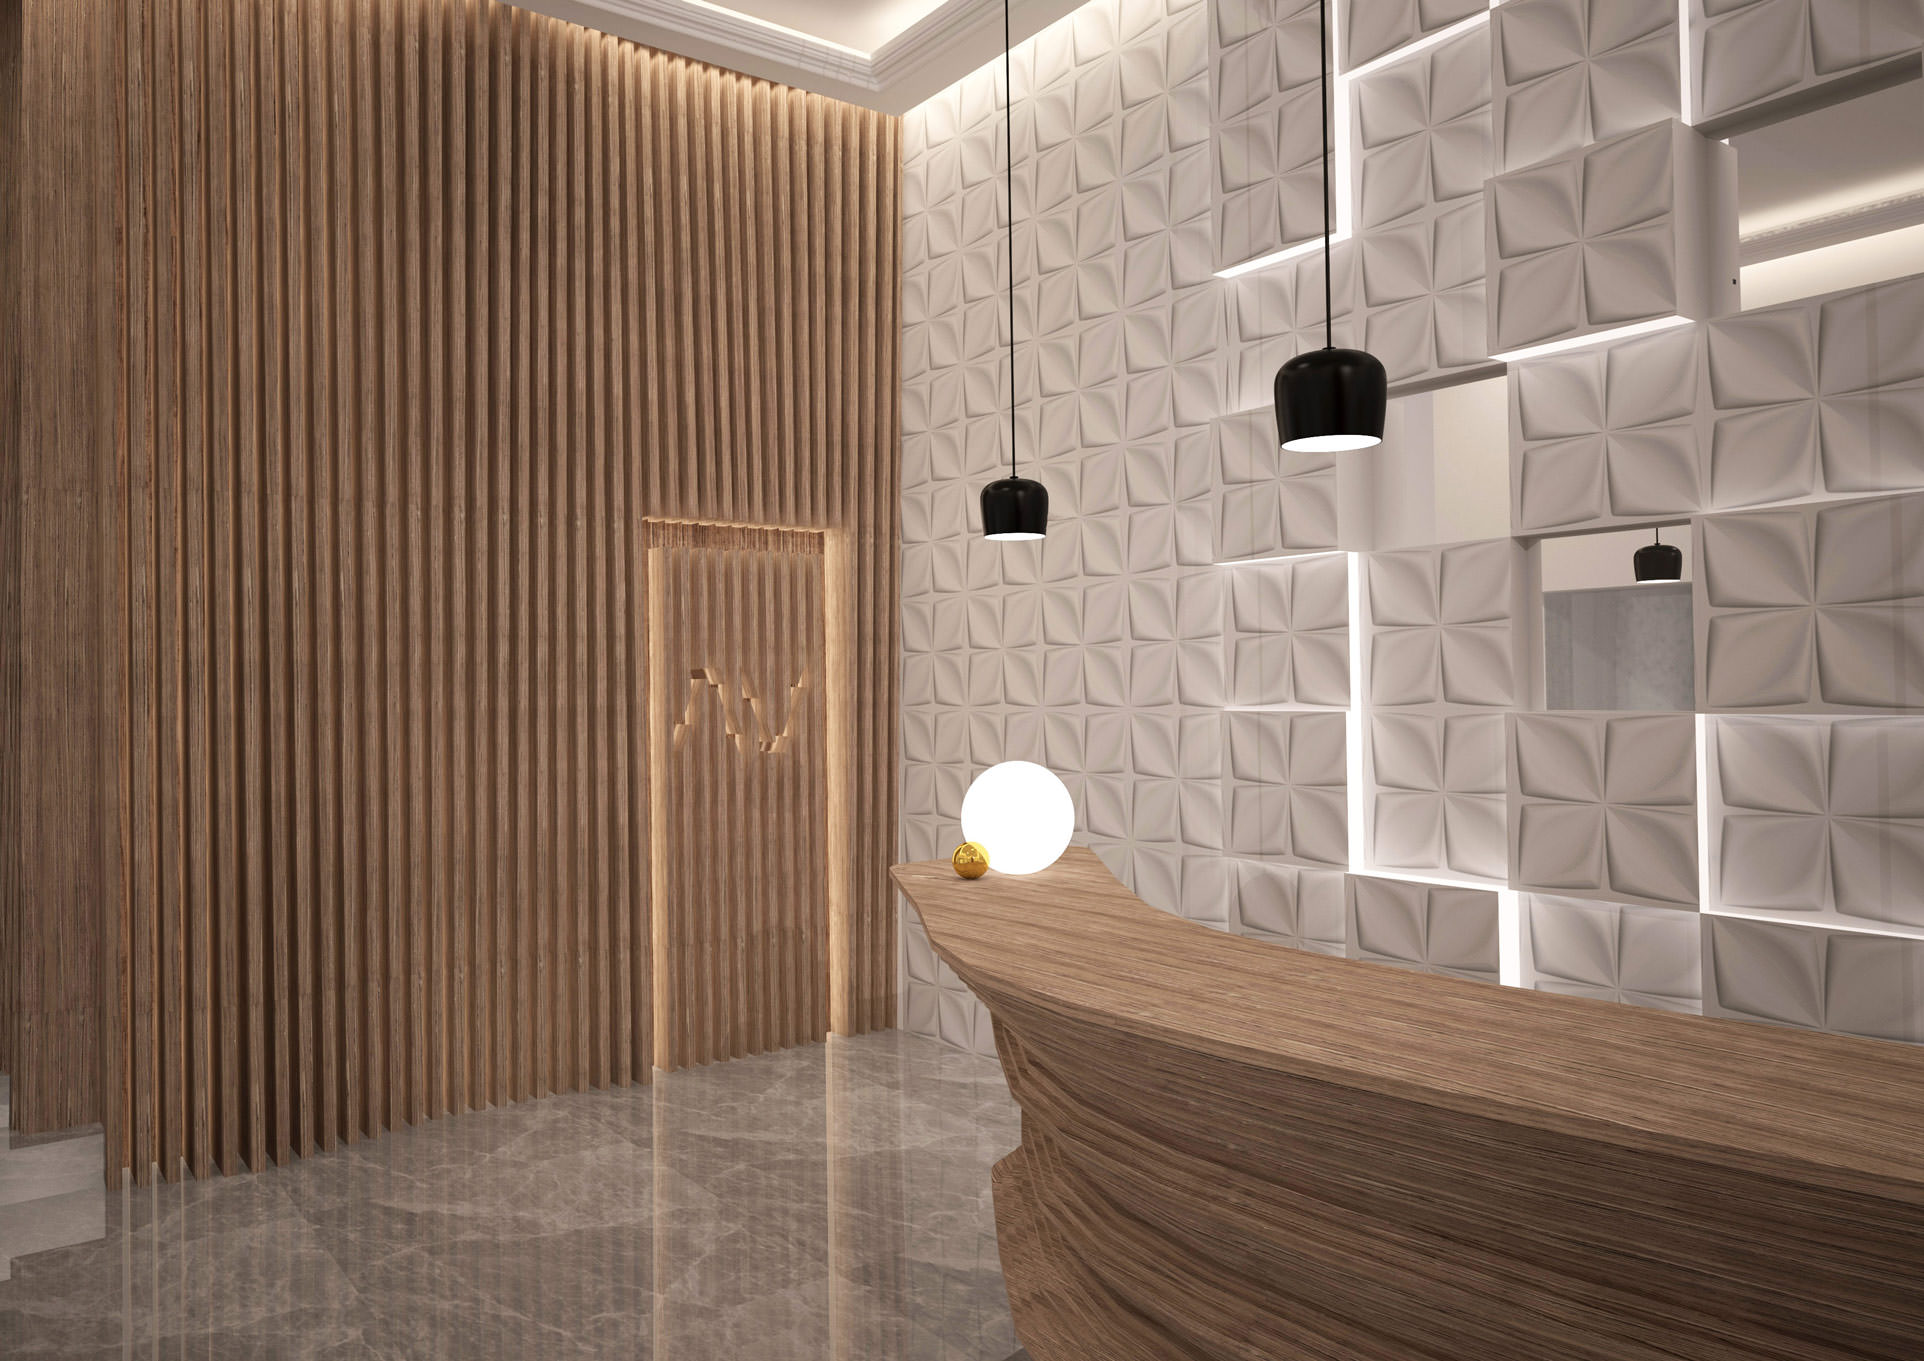 Συμμετοχή της M!nd the_Ark στο Διαγωνισμό 100% Hotel Design Awards | Hotels & leisure housing complexes